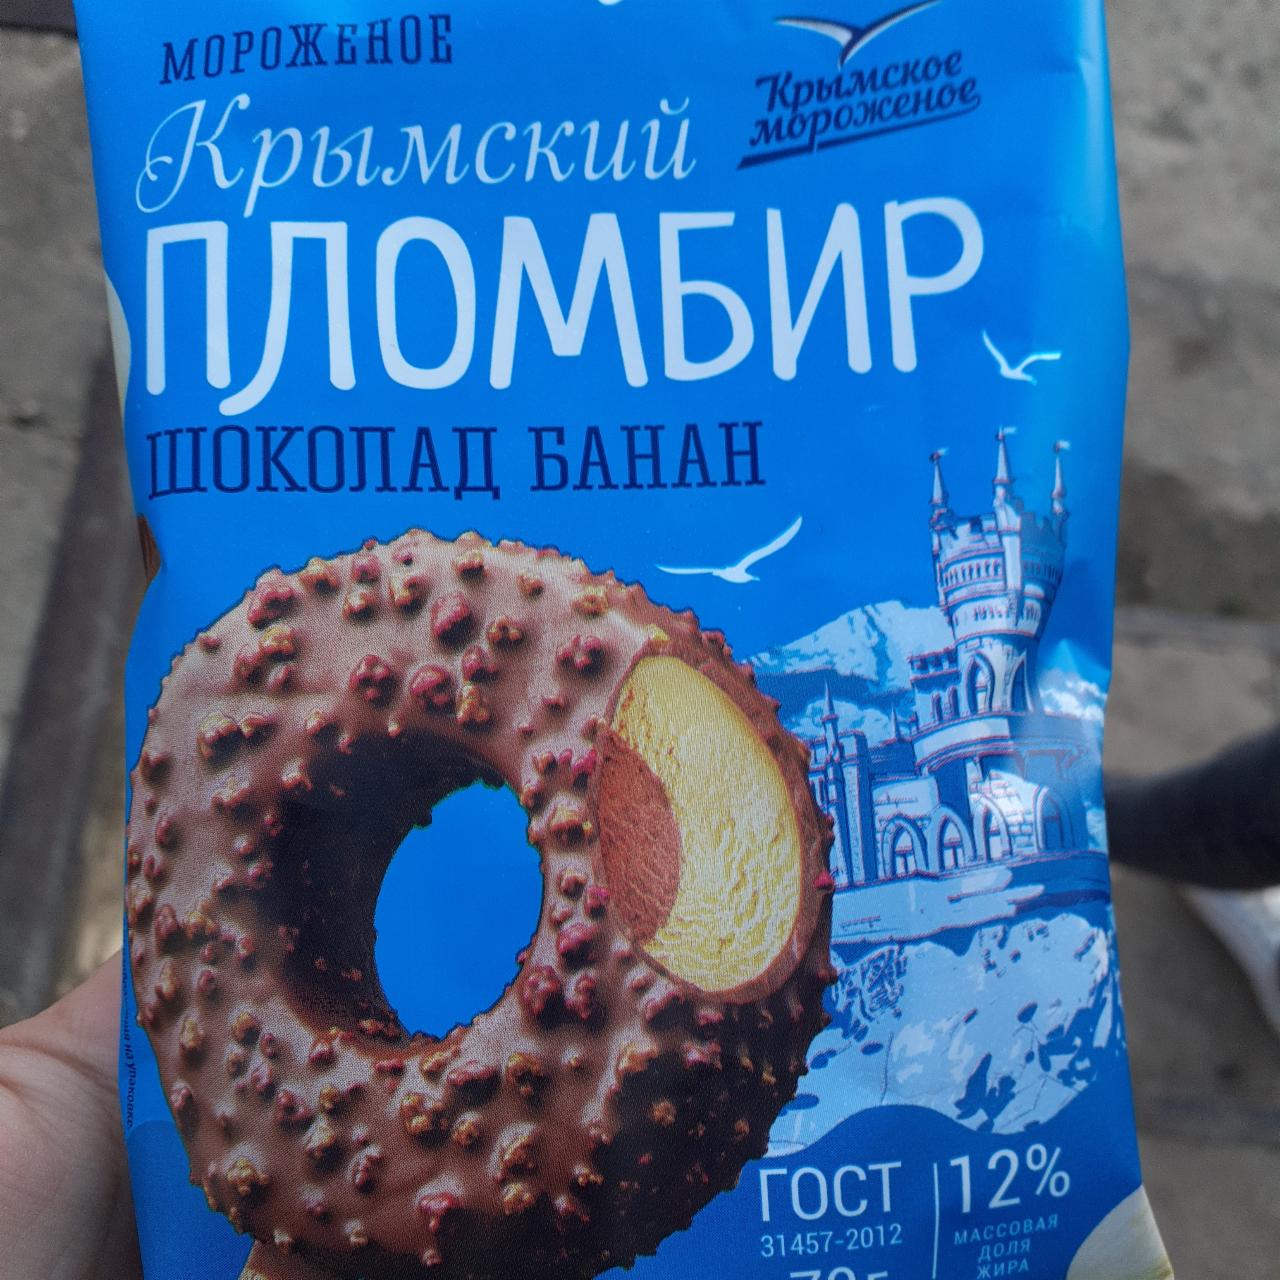 Фото - Мороженое Крымский пломбир шоколад банан Крымское мороженое